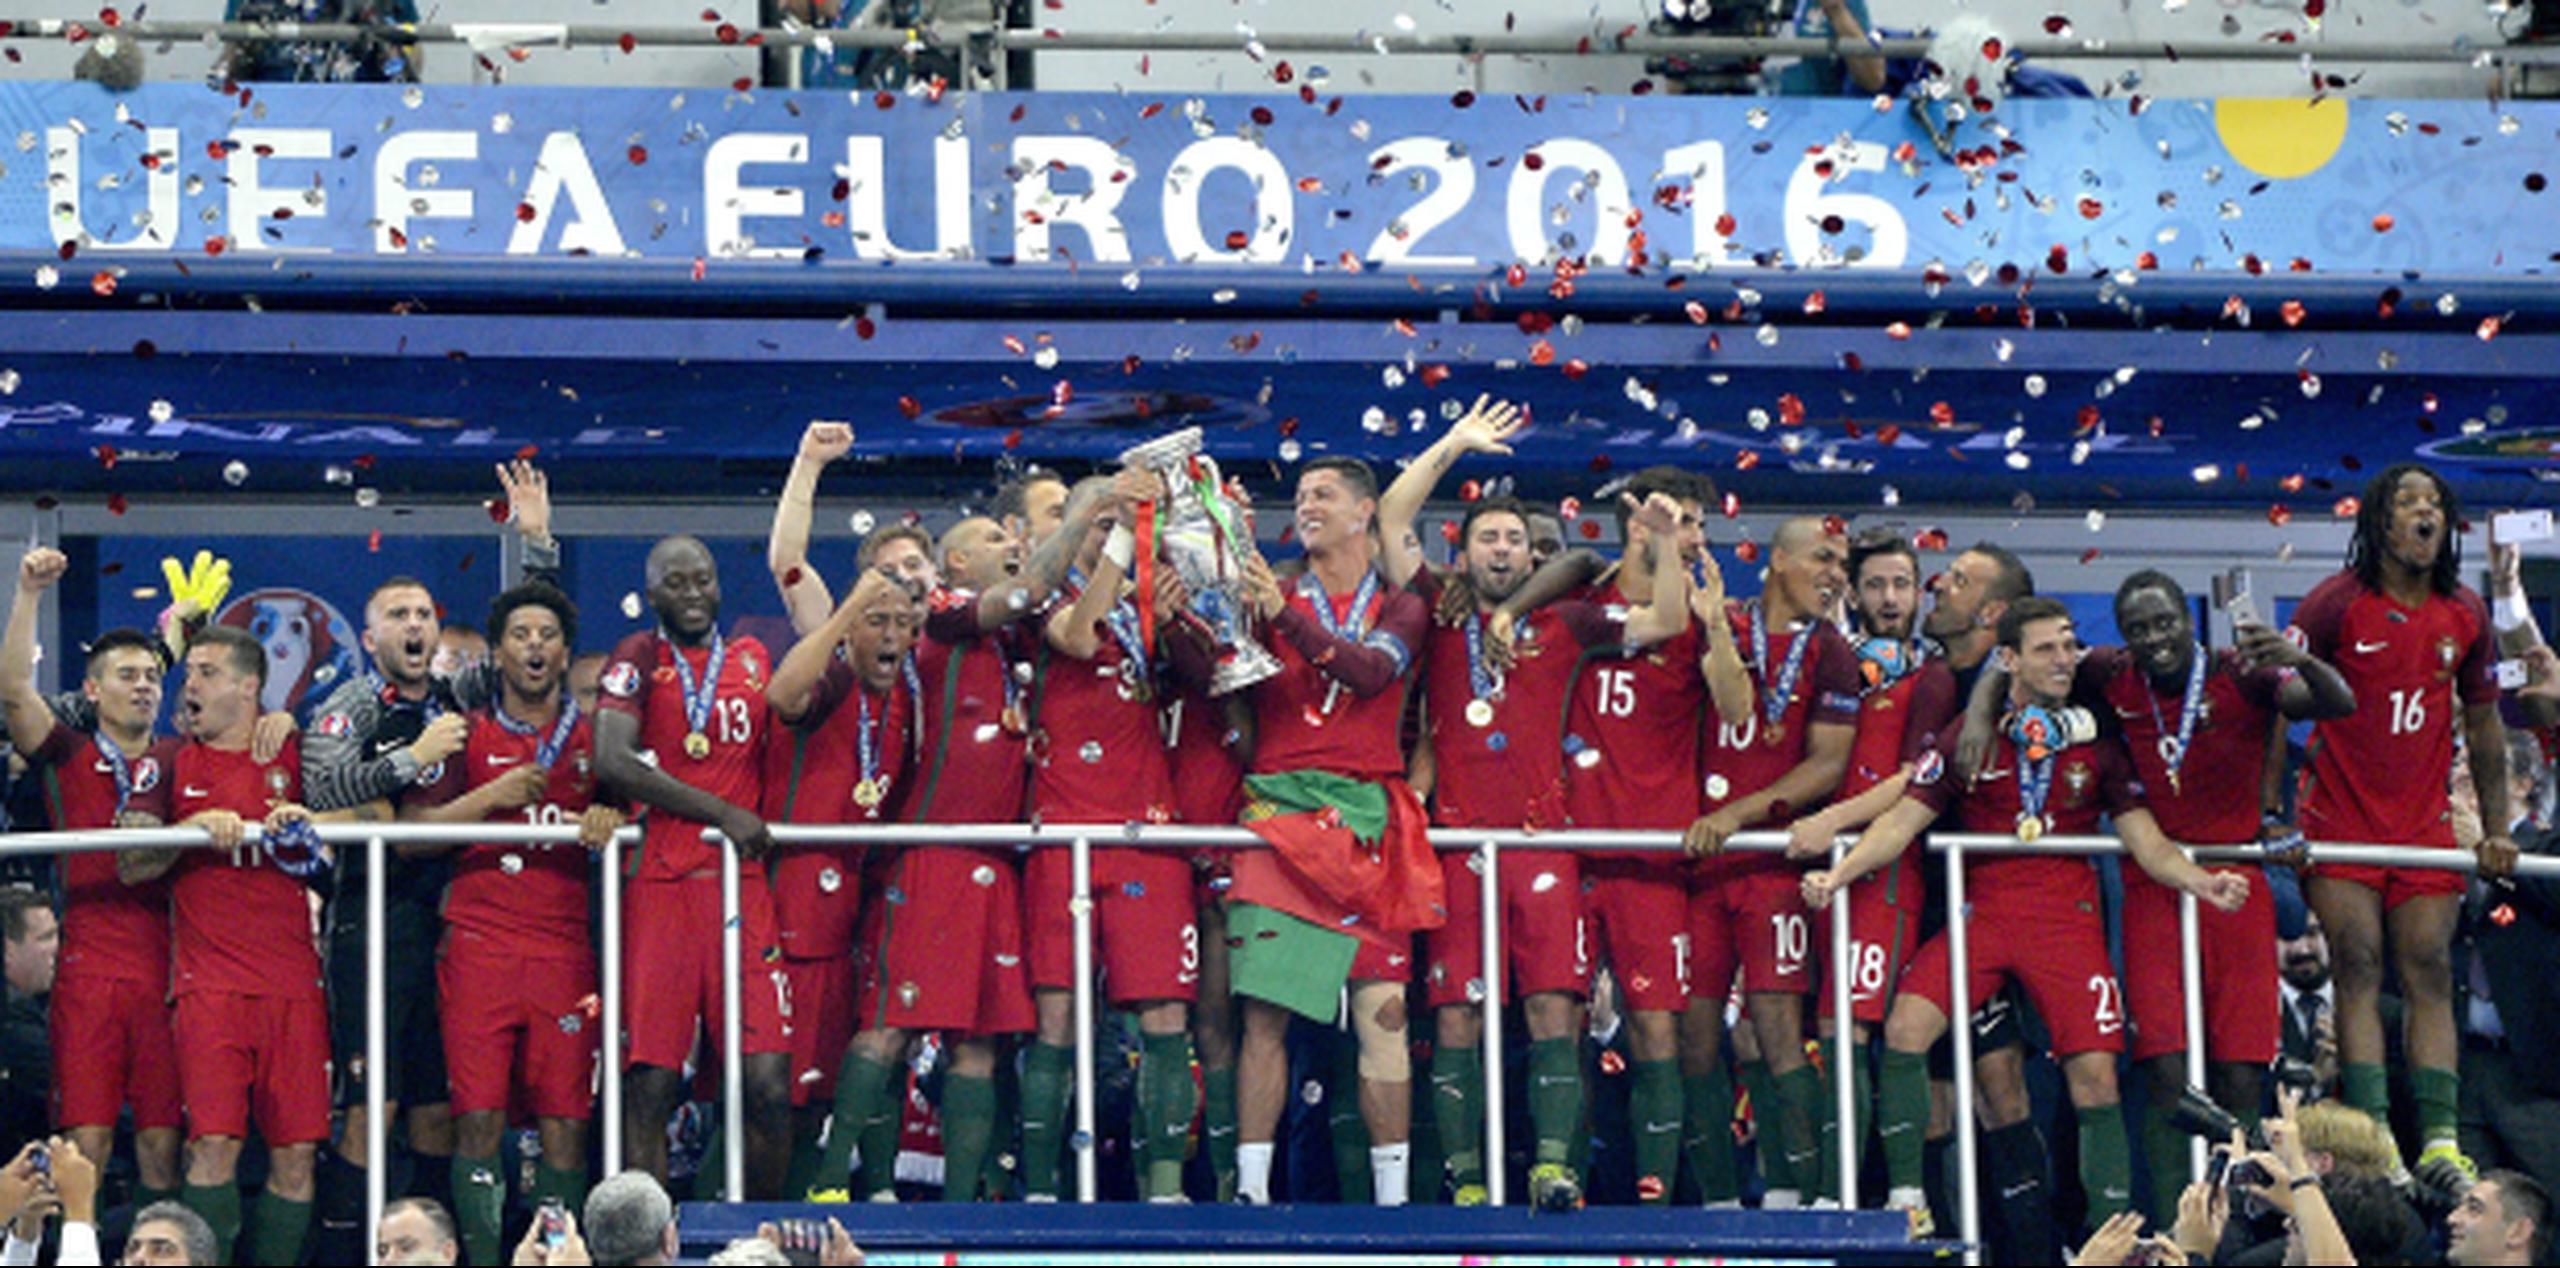 Eder le dio a Portugal su primer título internacional al consagrarse campeona de la Eurocopa el domingo con un triunfo 1-0 sobre Francia. (EFE)